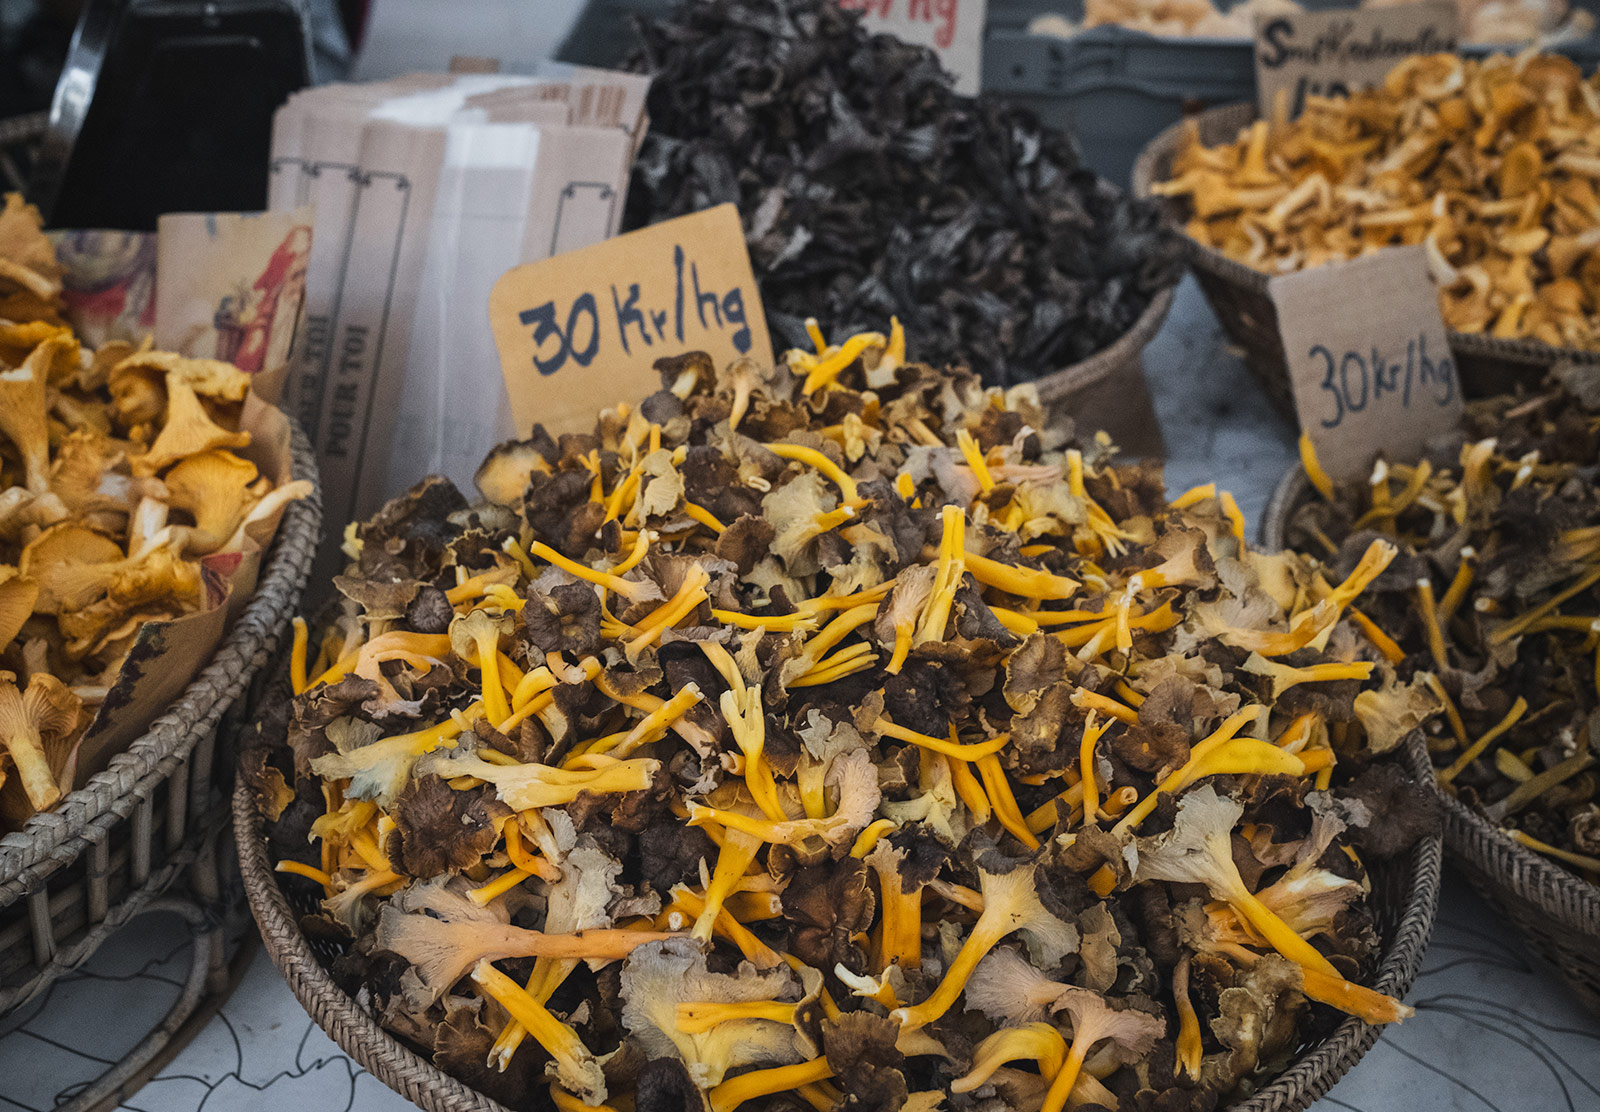 Bowl of foraged mushrooms at a market